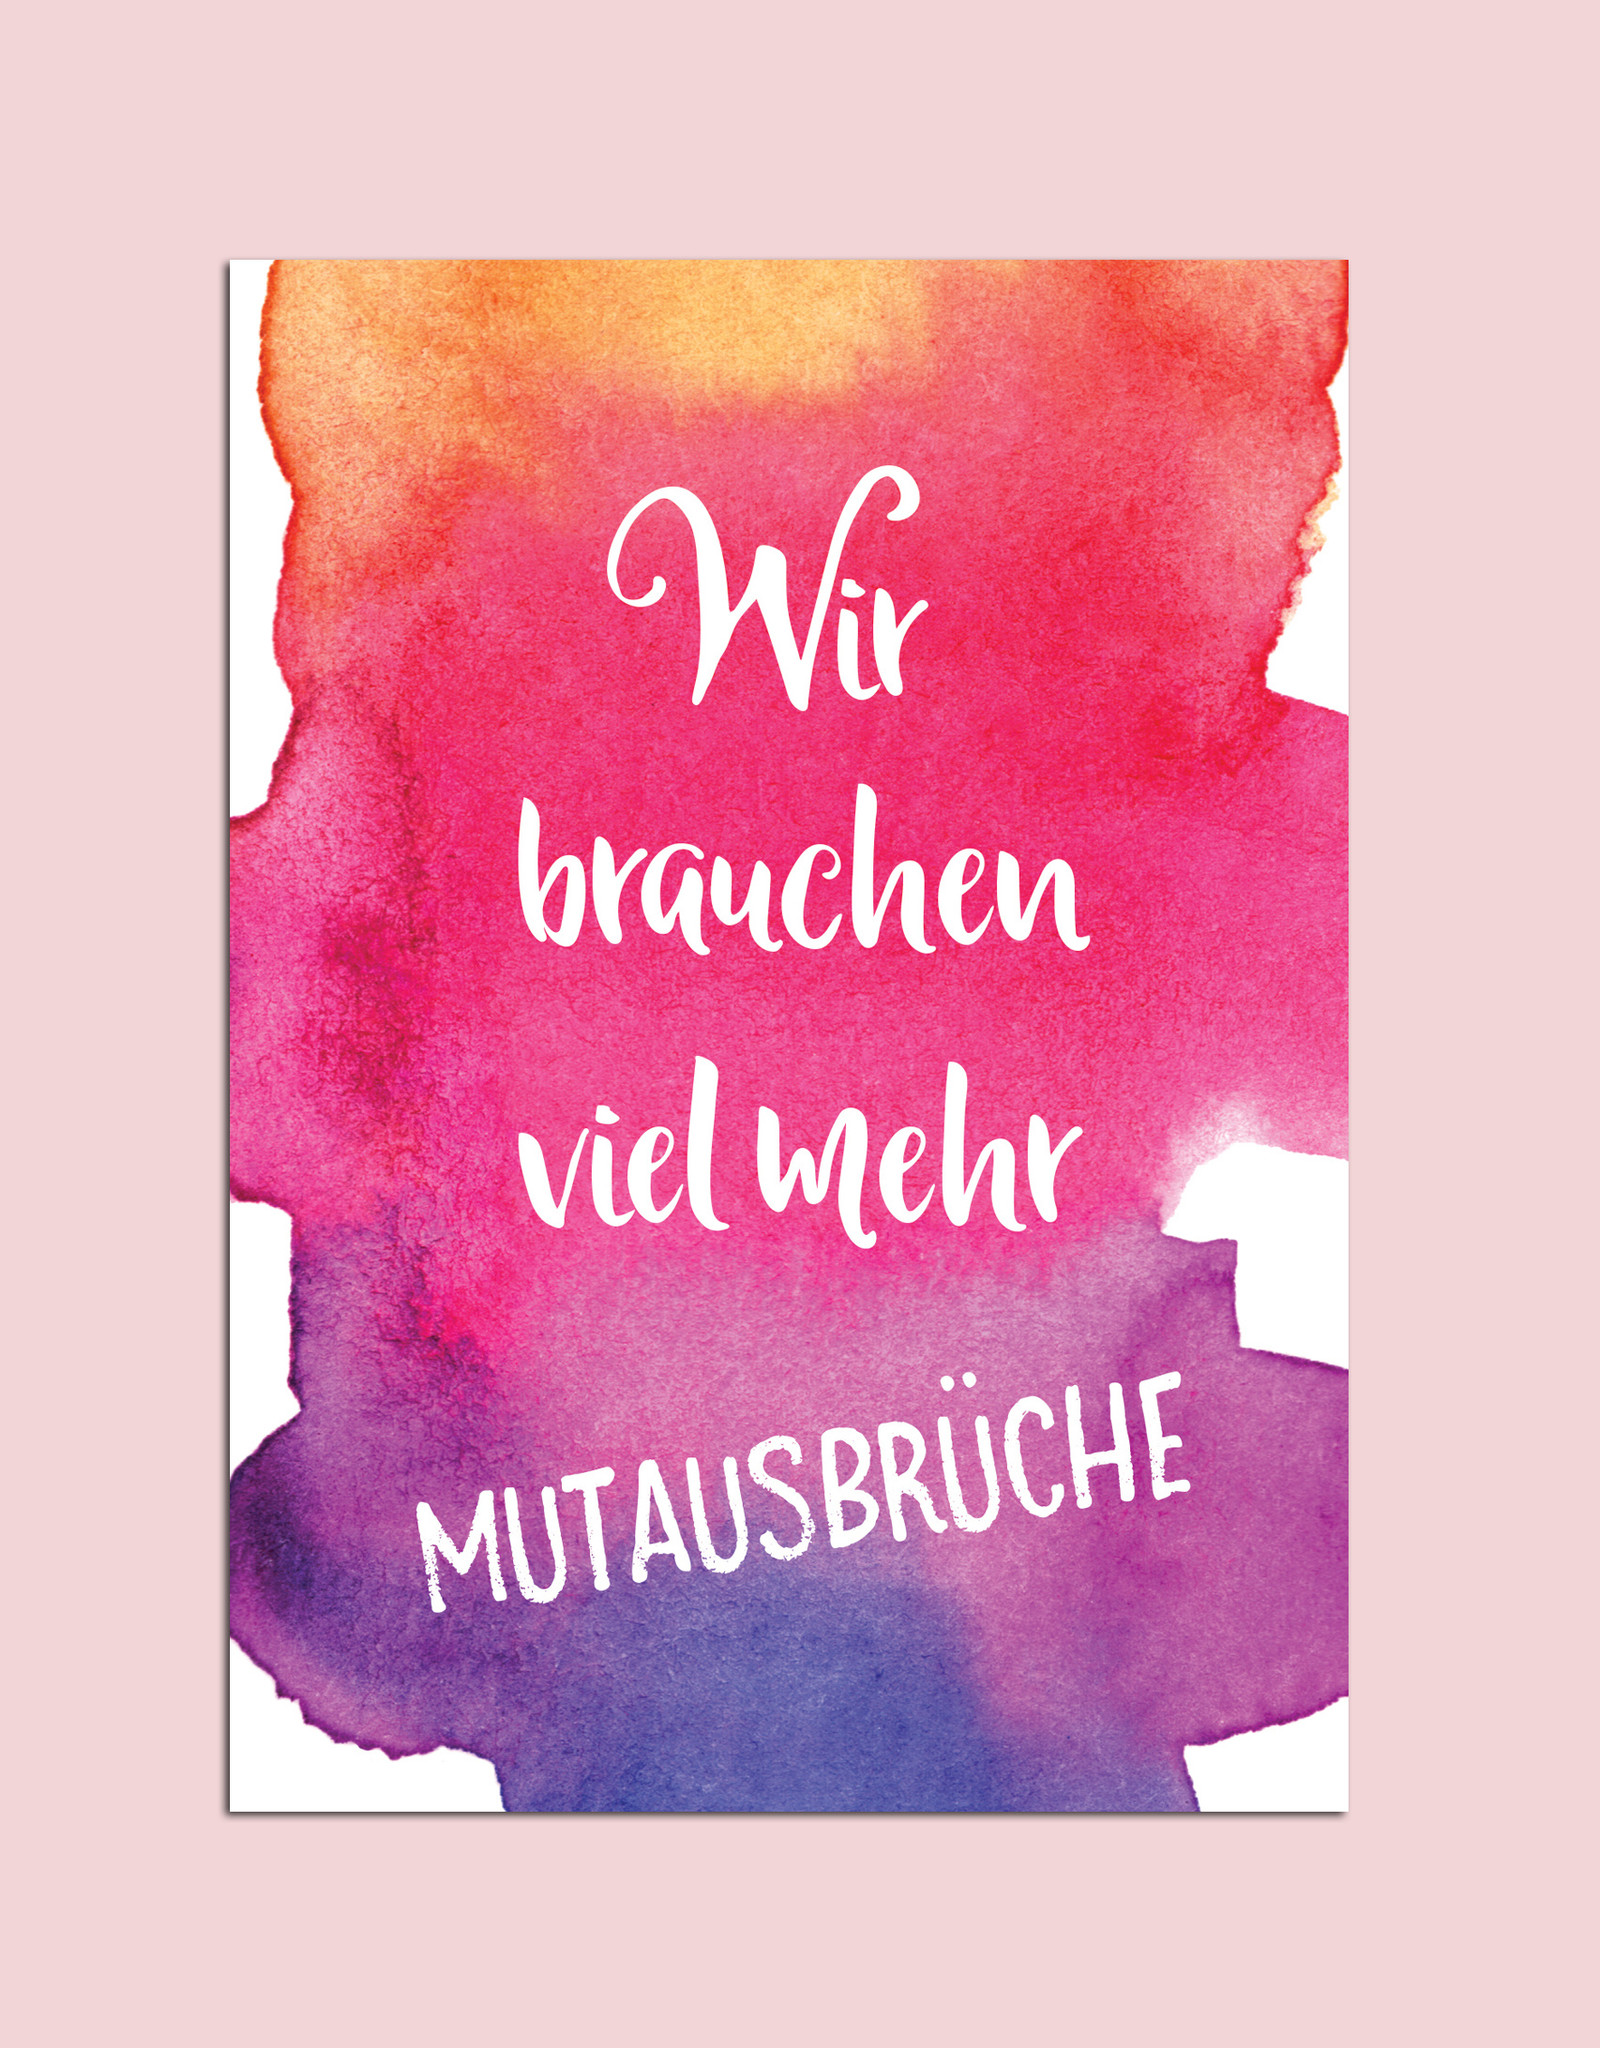 Postkarte Spruch "Mutausbrüche"